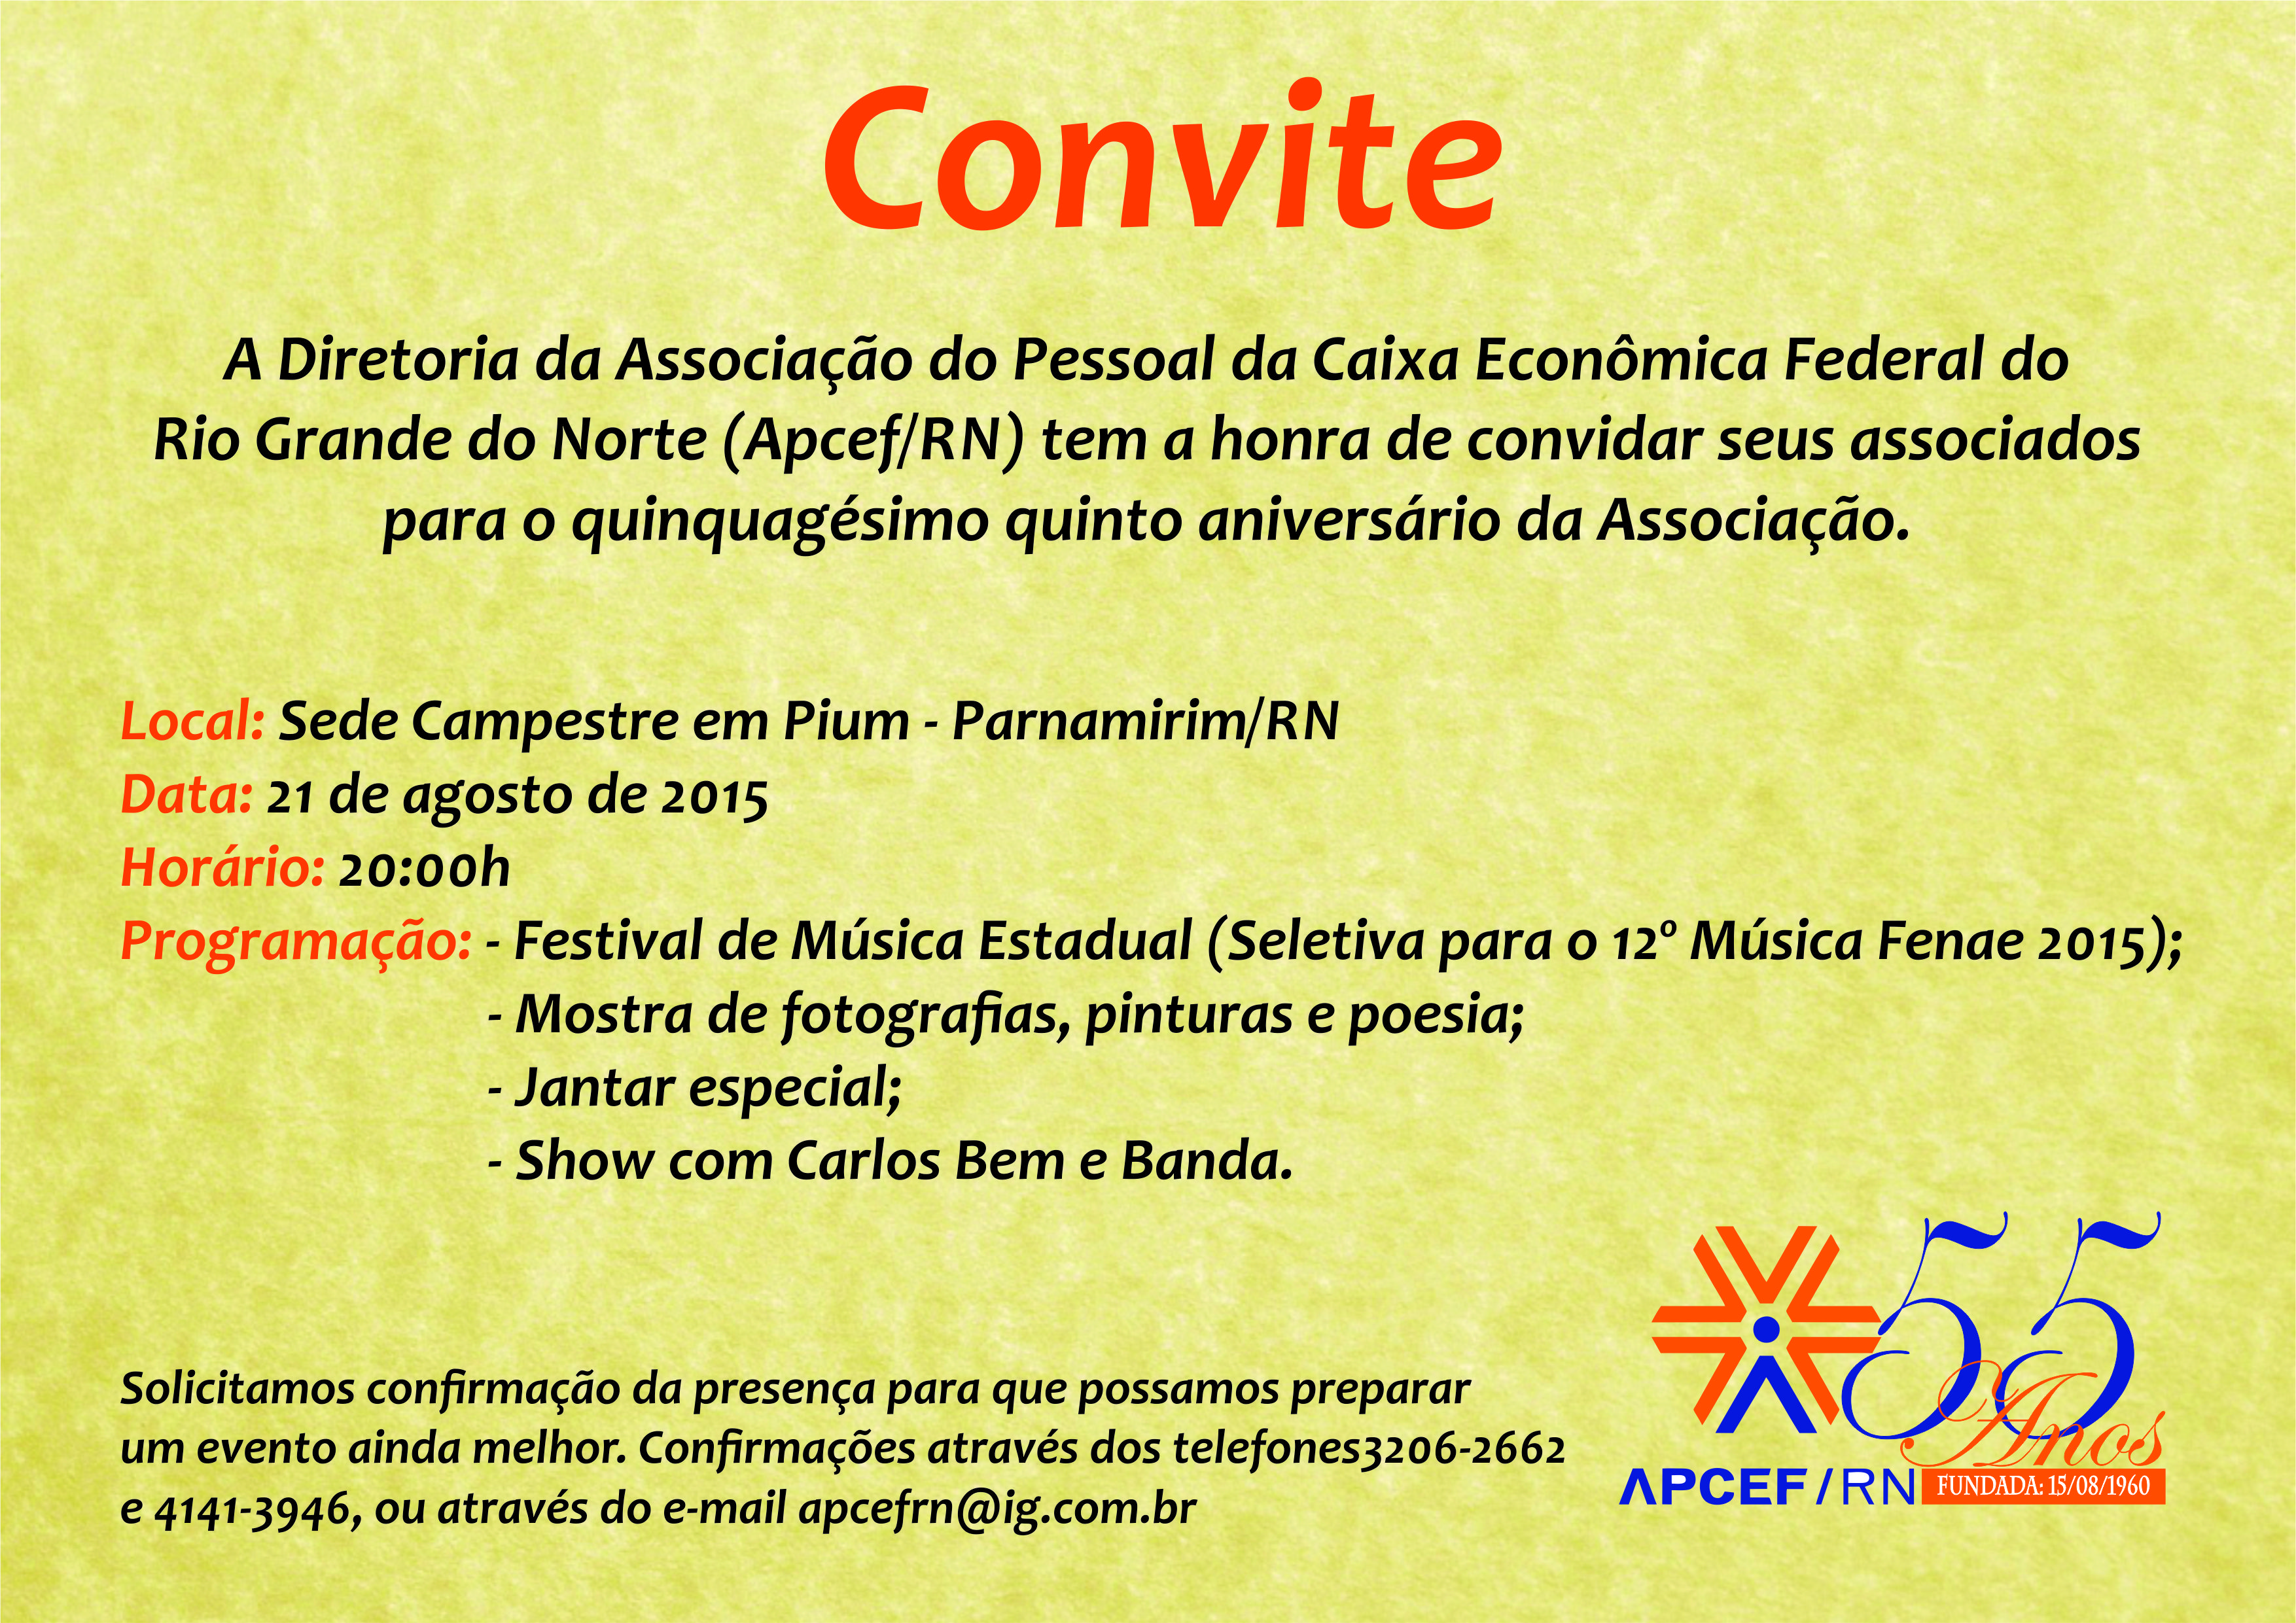 Convite - anivers_rio ApcefRN.jpg